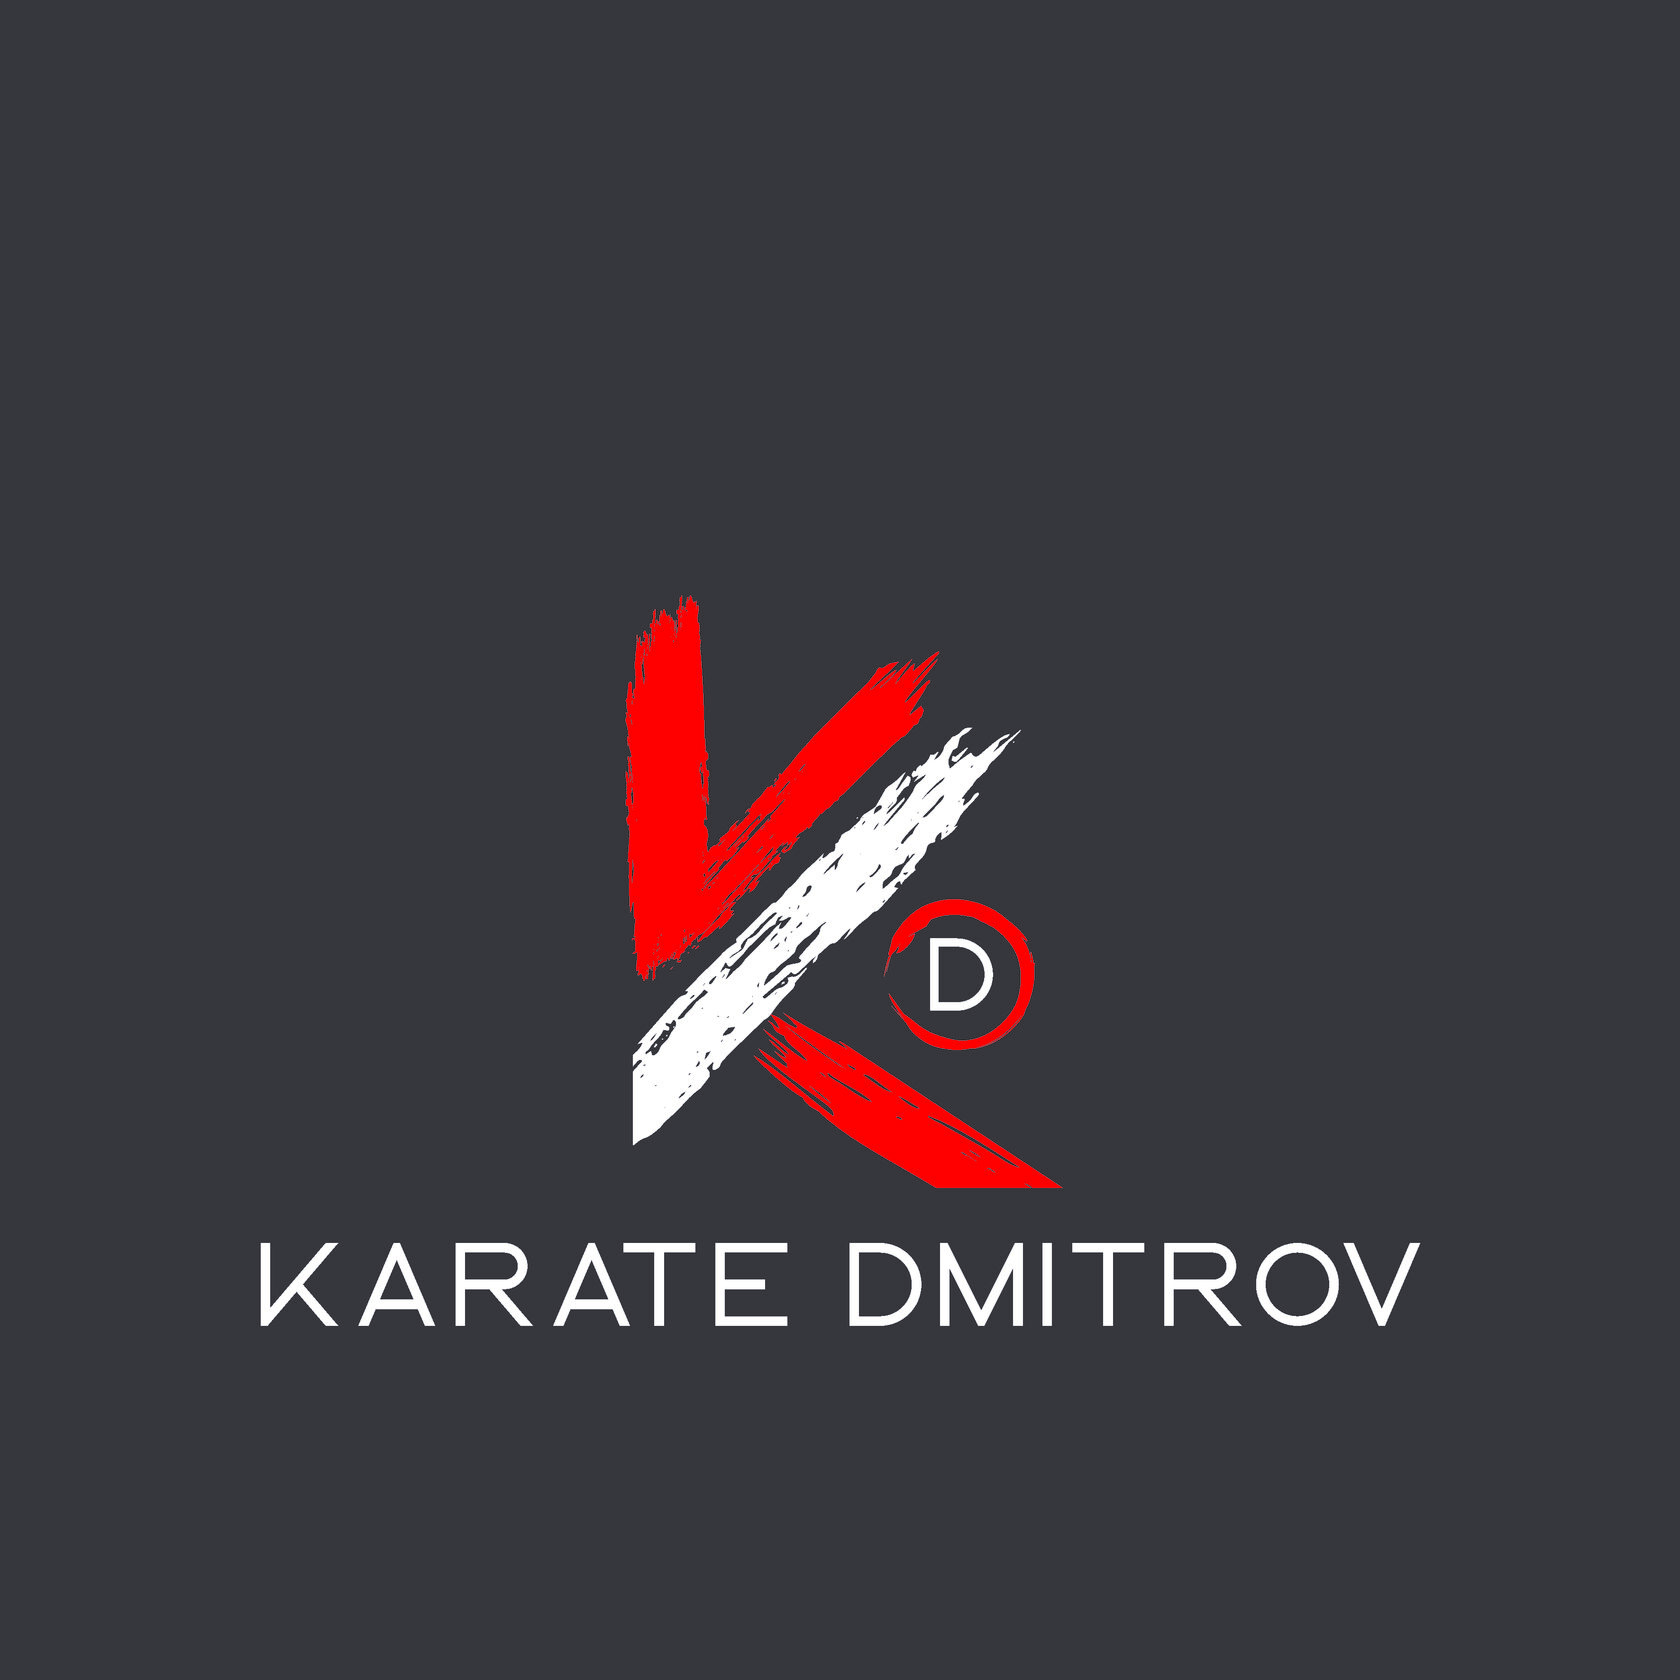 KARATE DMITROV